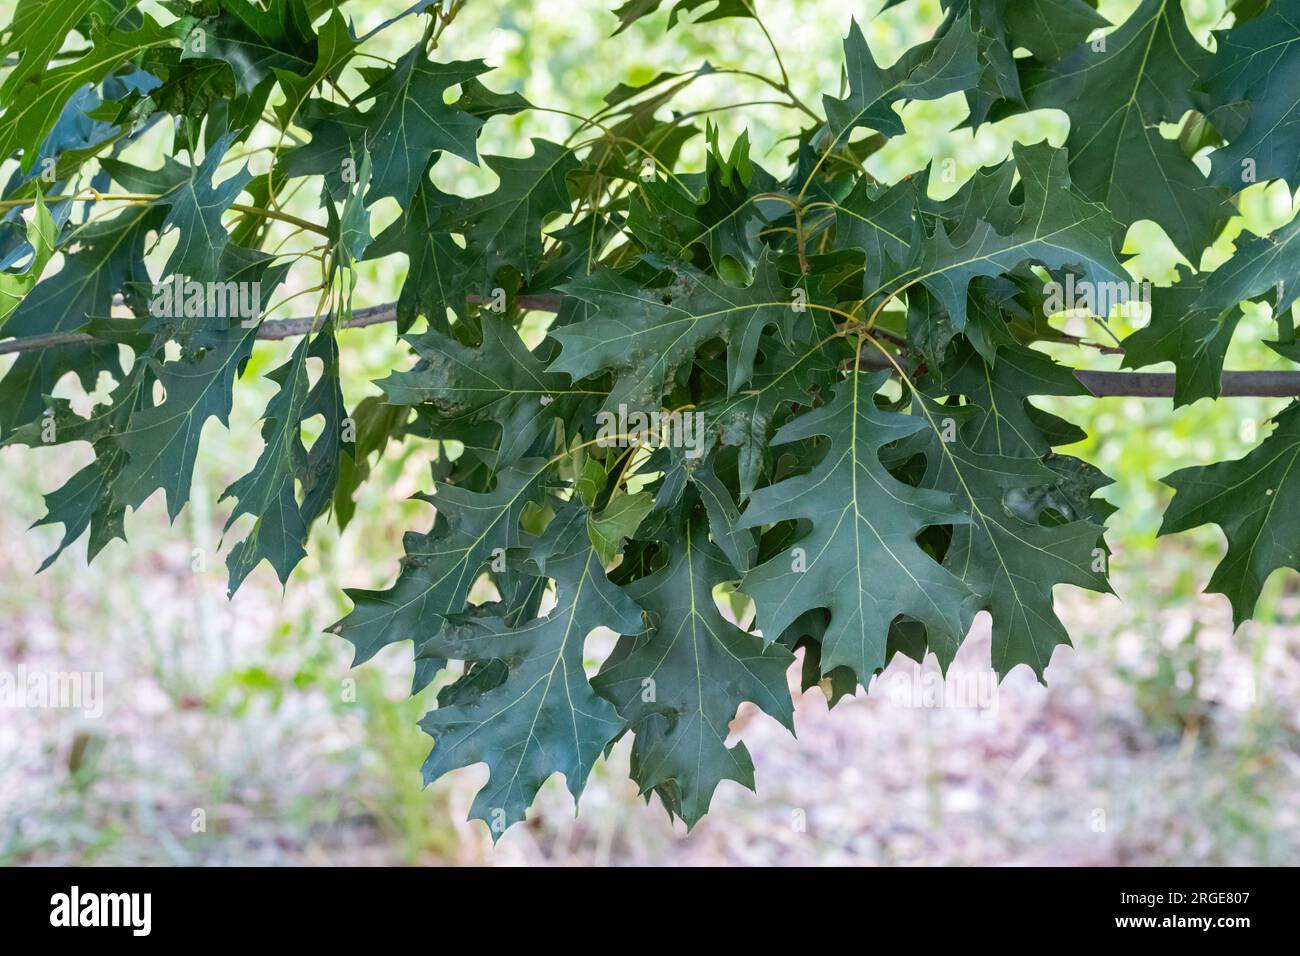 Gros plan d'une petite branche portant des feuilles de chêne Shumard, Quercus shumardii. Kansas, États-Unis. Banque D'Images